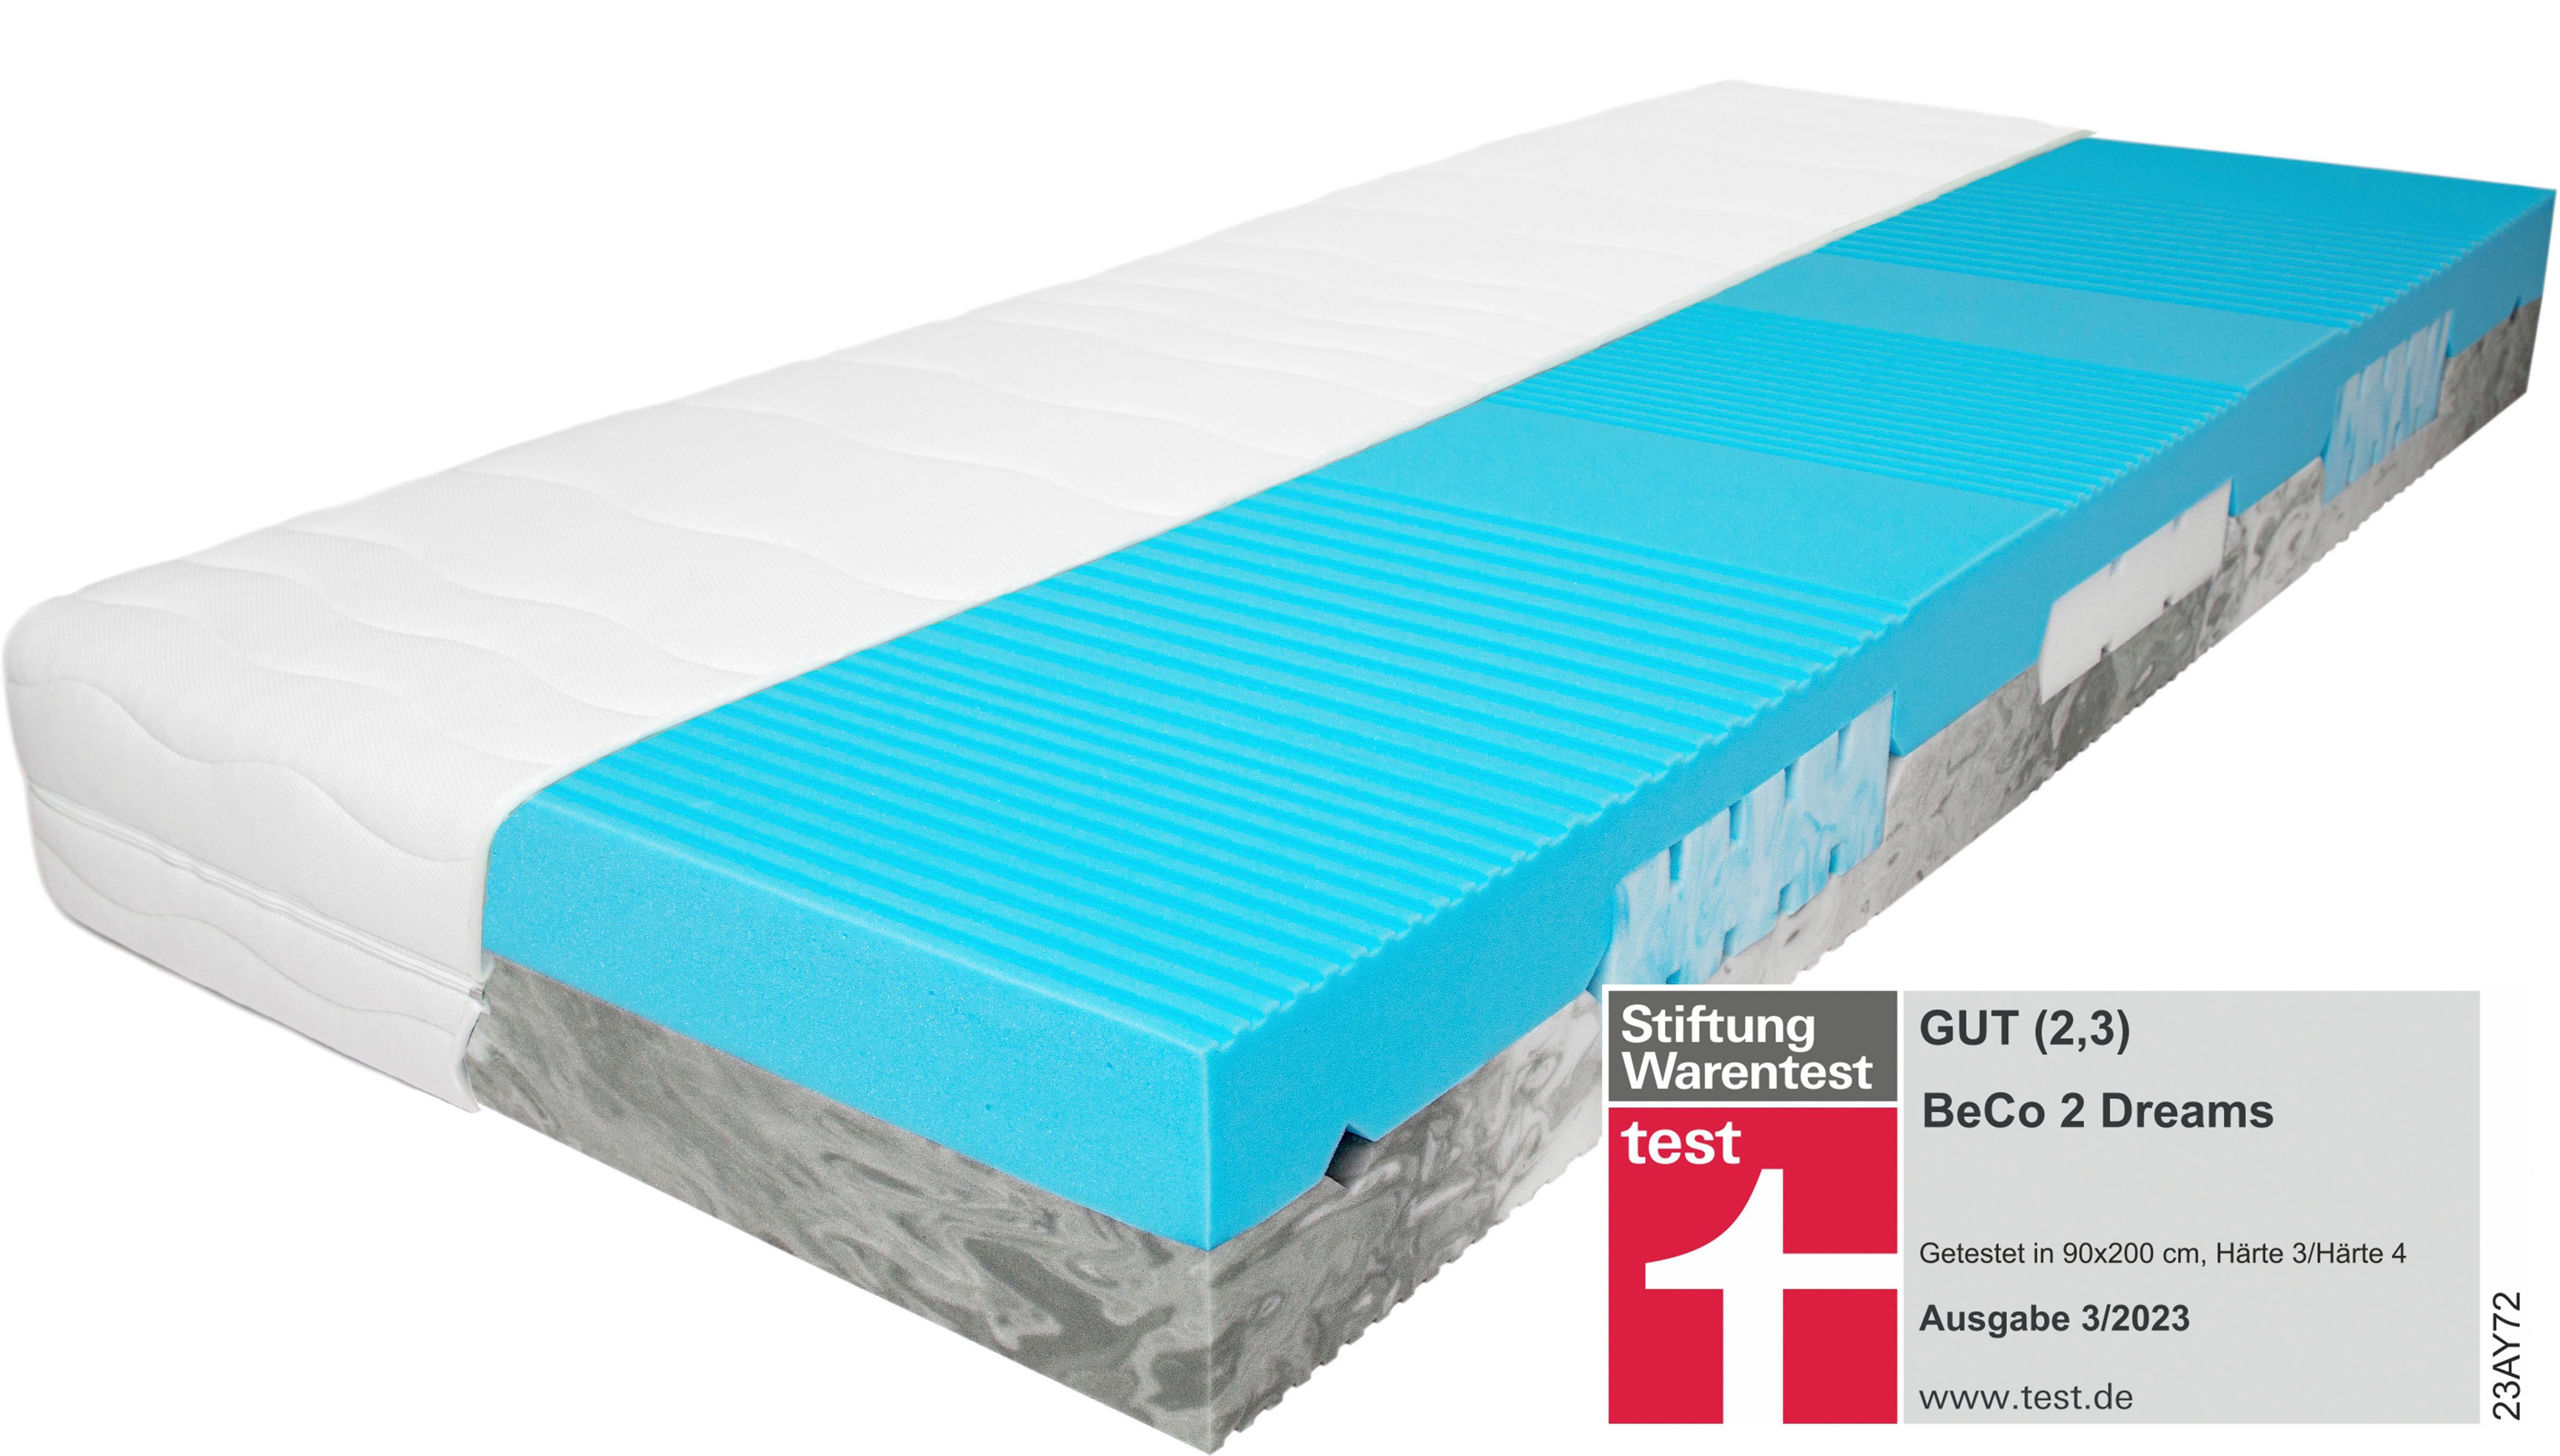 Komfortschaummatratze 2 Dreams von Stiftung Warentest mit "GUT" (2,3)  bewertet., Beco, 21 cm hoch, komfortable Matratze in 90x200 cm und weiteren  Größen erhältlich